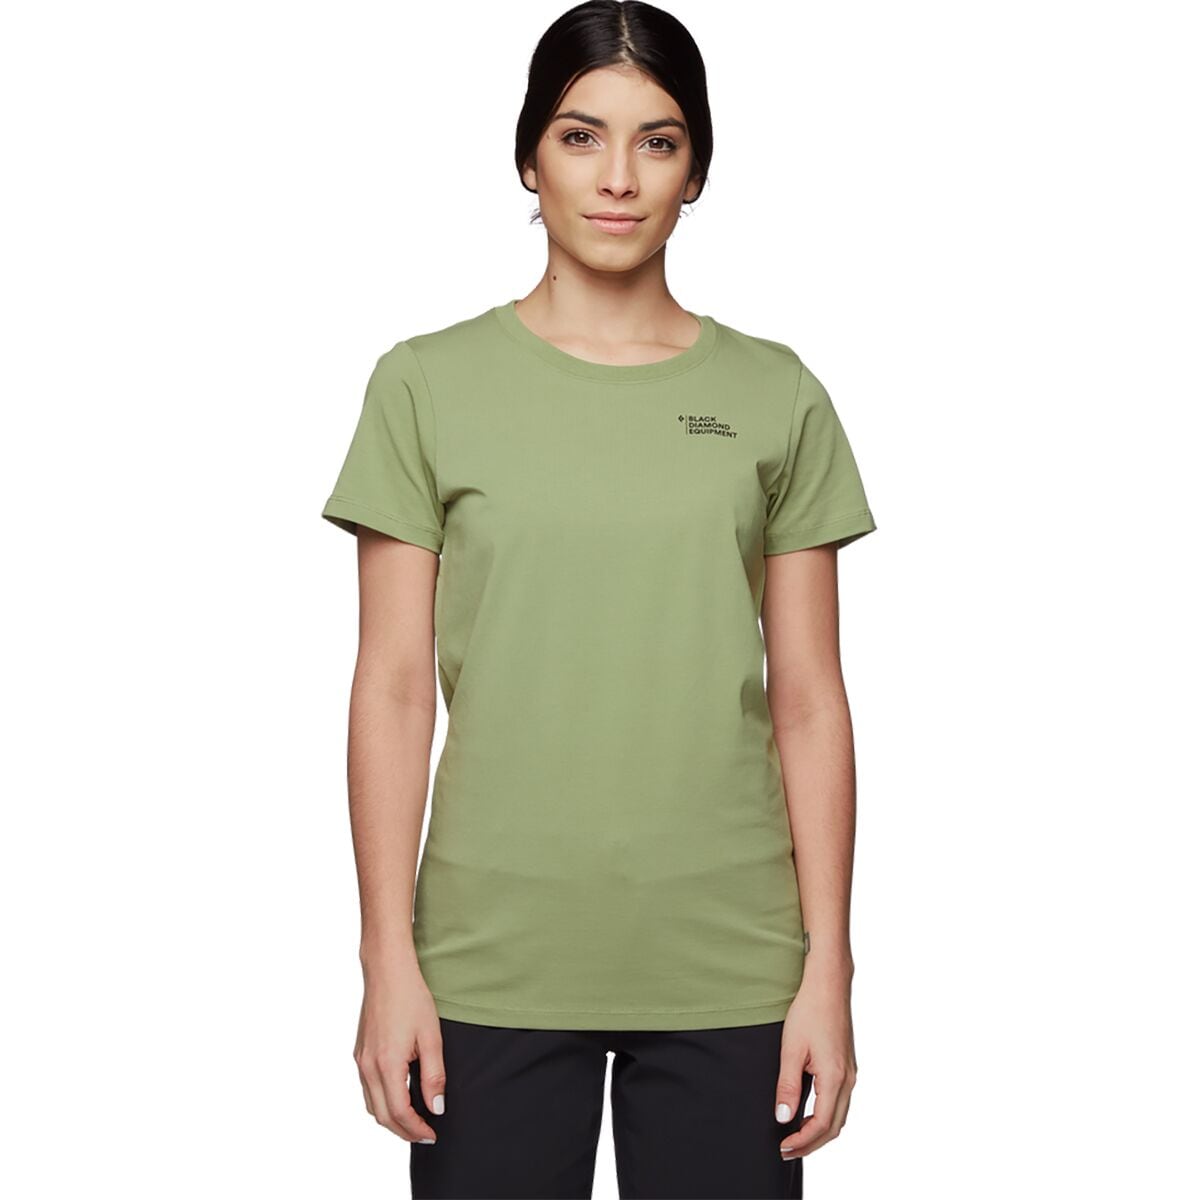 Desert To Mountain Short-Sleeve T-Shirt - Women